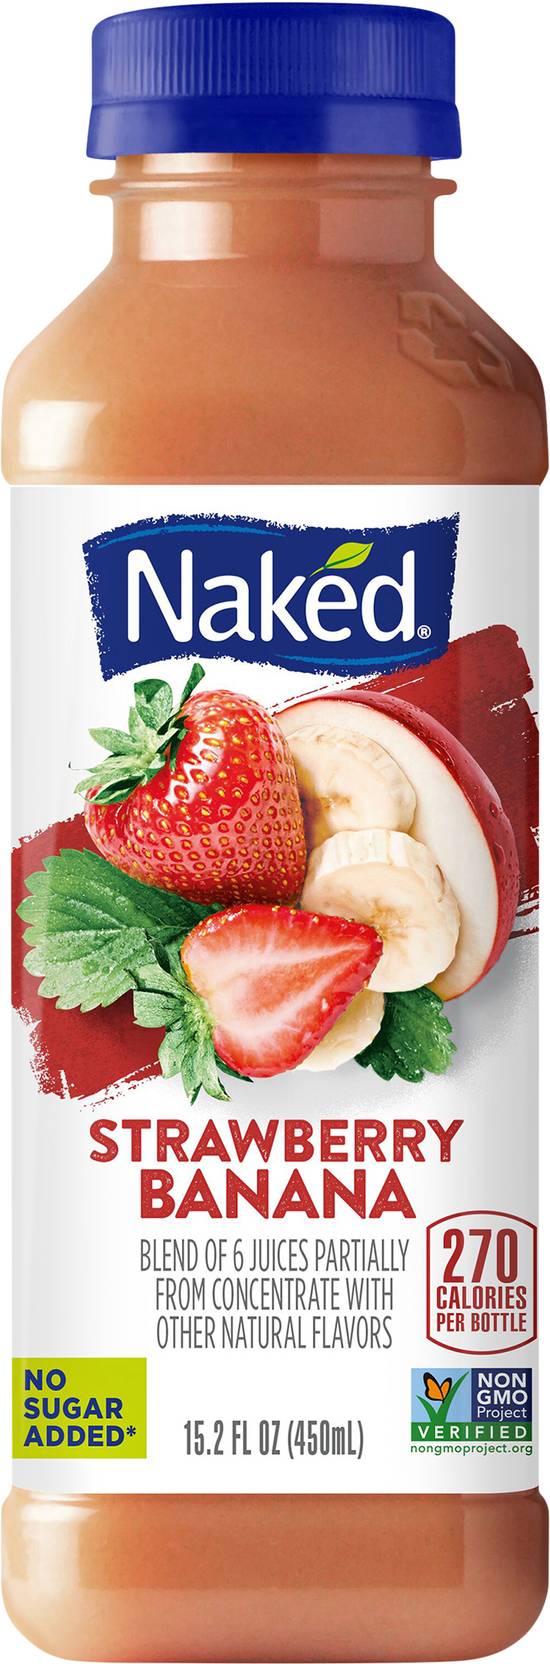 Naked No Sugar Added Fruit Juice (15.2 fl oz) (strawberry-banana)